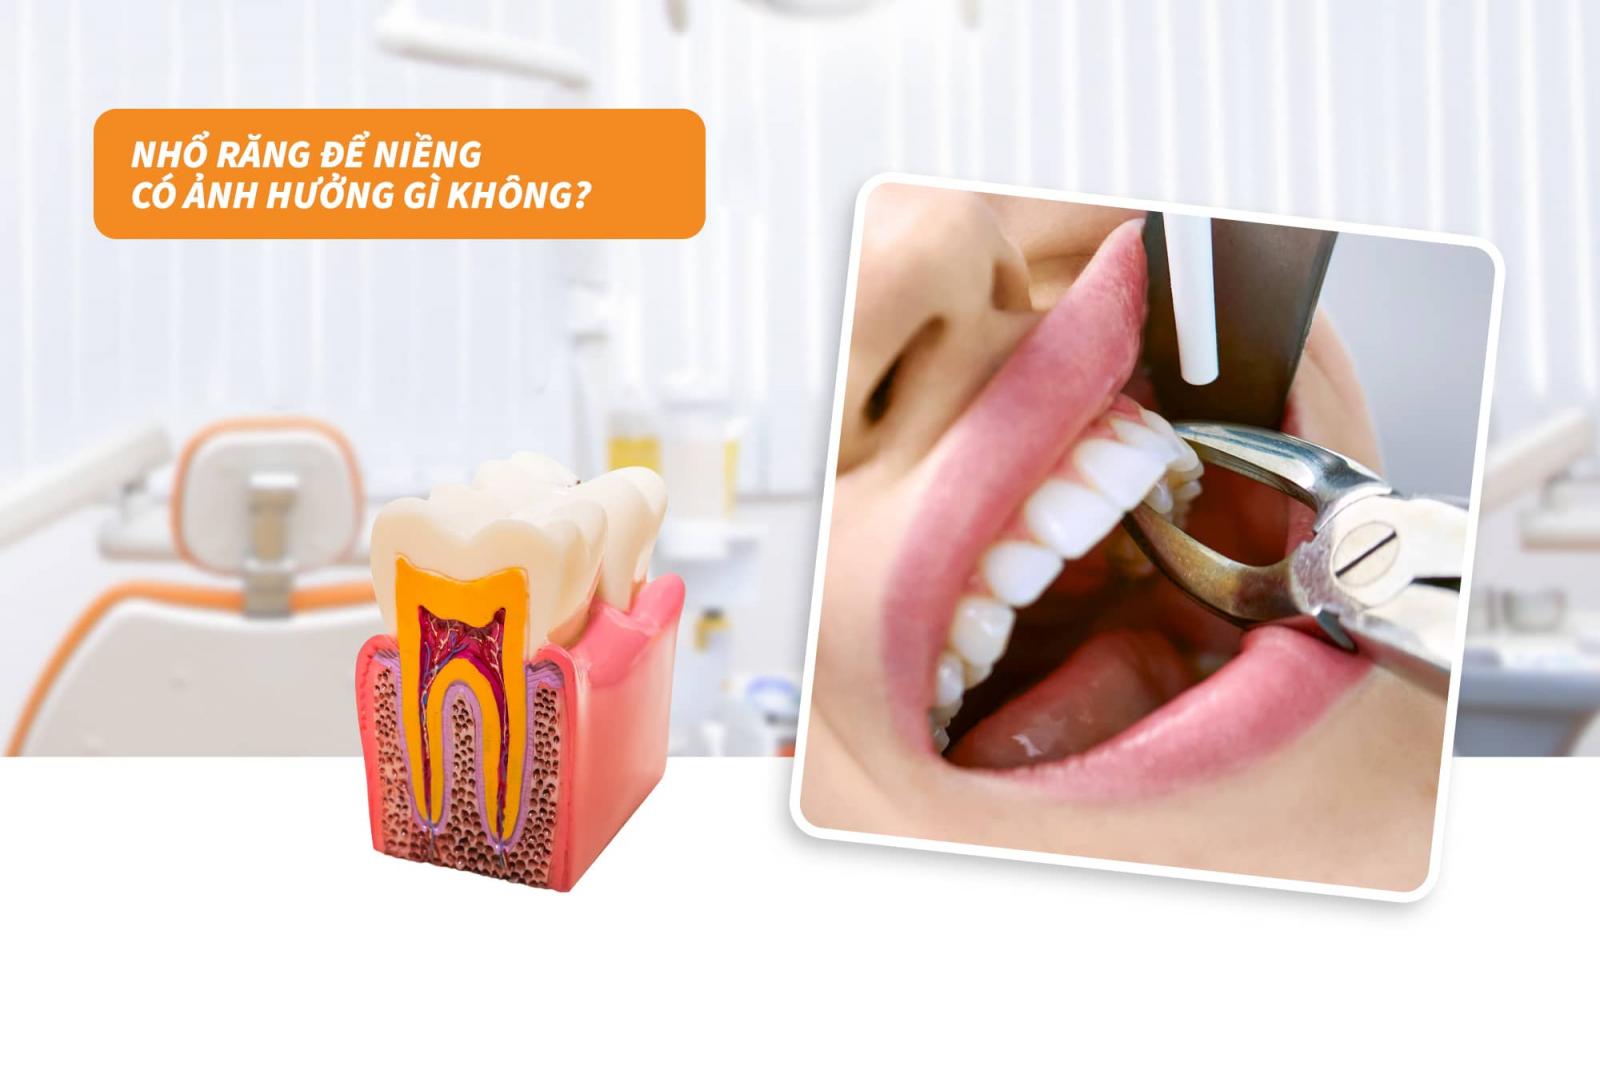 Nhổ răng để niềng có ảnh hưởng gì không?